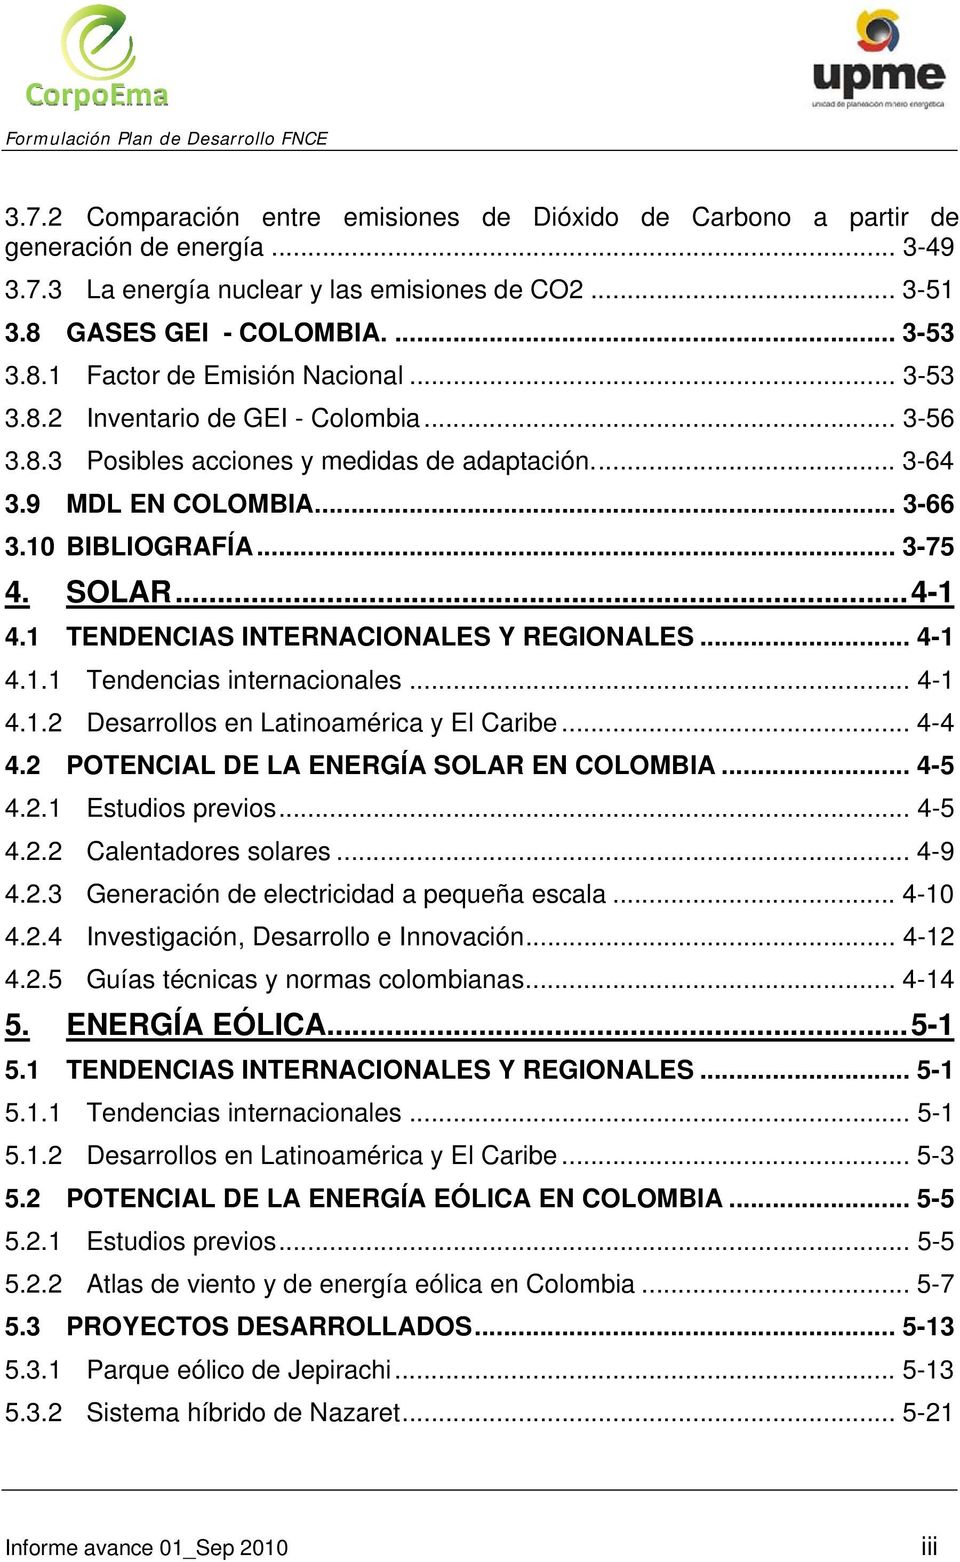 1 TENDENCIAS INTERNACIONALES Y REGIONALES... 4-1 4.1.1 Tendencias internacionales... 4-1 4.1.2 Desarrollos en Latinoamérica y El Caribe... 4-4 4.2 POTENCIAL DE LA ENERGÍA SOLAR EN COLOMBIA... 4-5 4.2.1 Estudios previos.